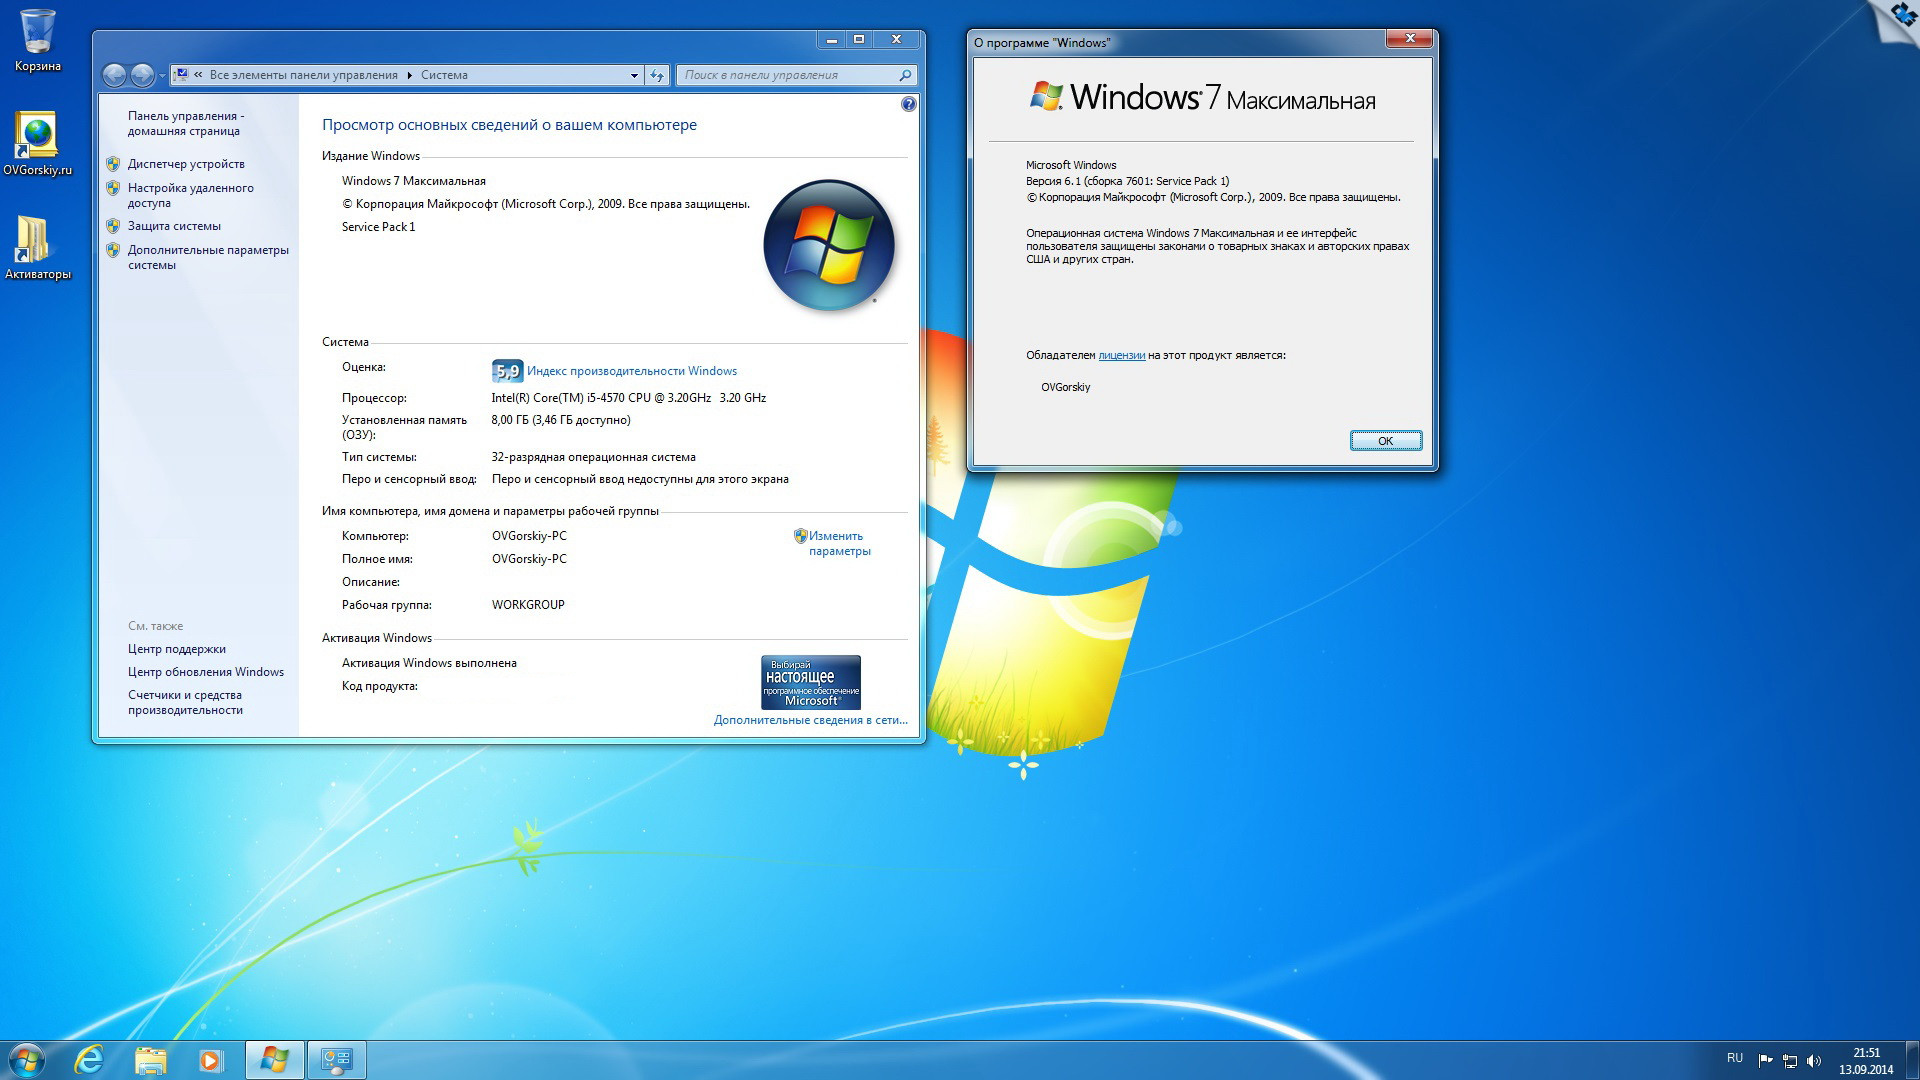 Windows 7 группы. Установочный ОС Windows 7. Характеристики ОС Windows 7. Windows 7 максимальная. Windows 7 максимальная компьютер.